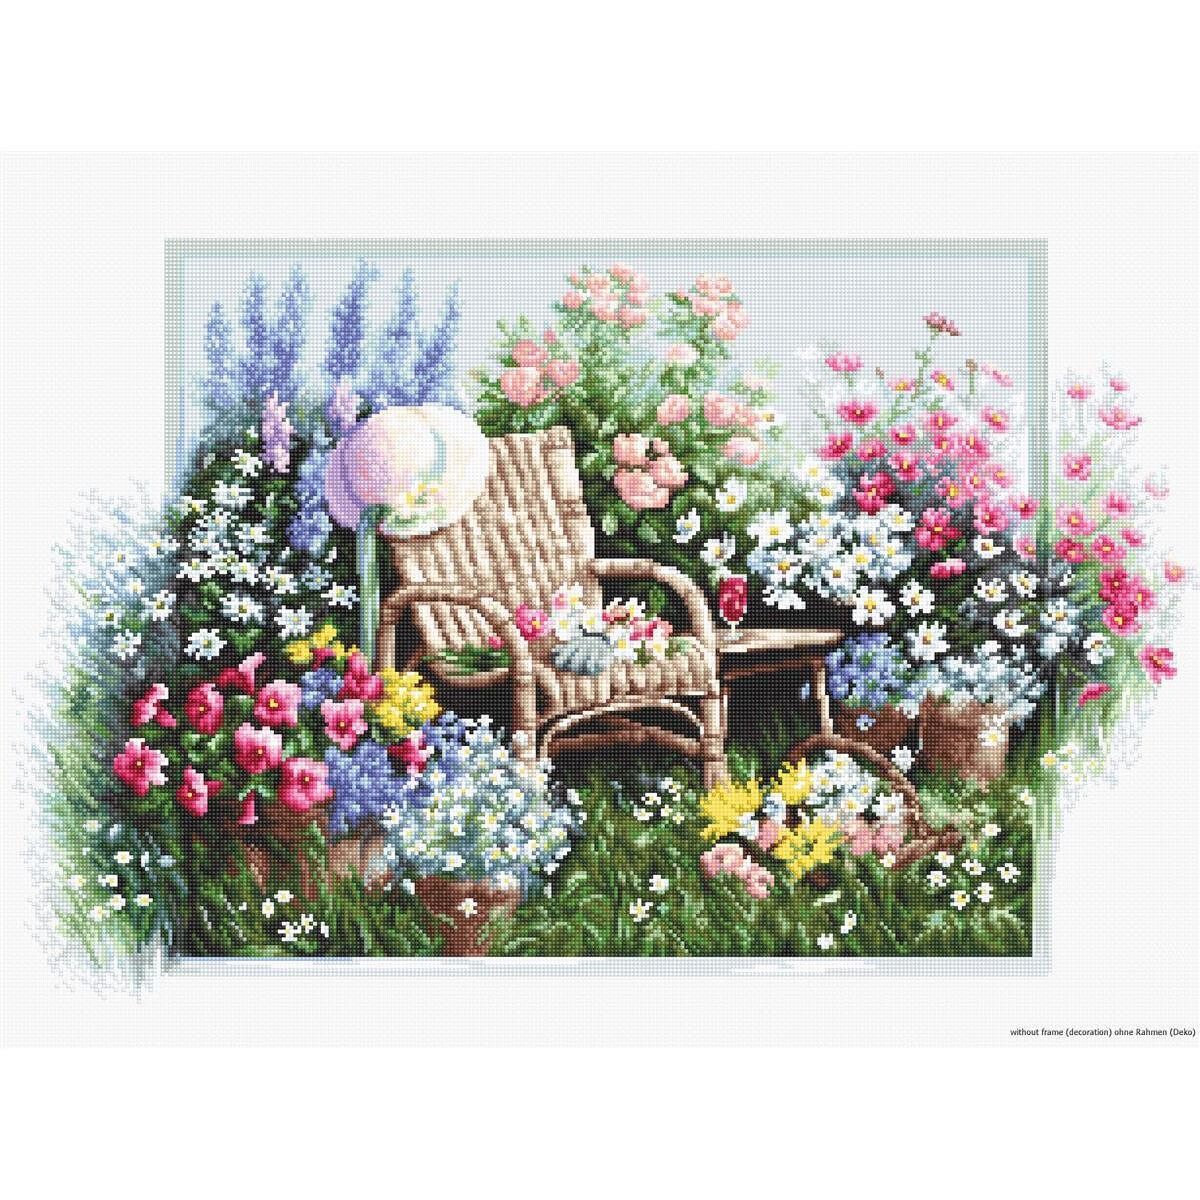 Спокойная сцена в саду с плетеным креслом, окруженным...